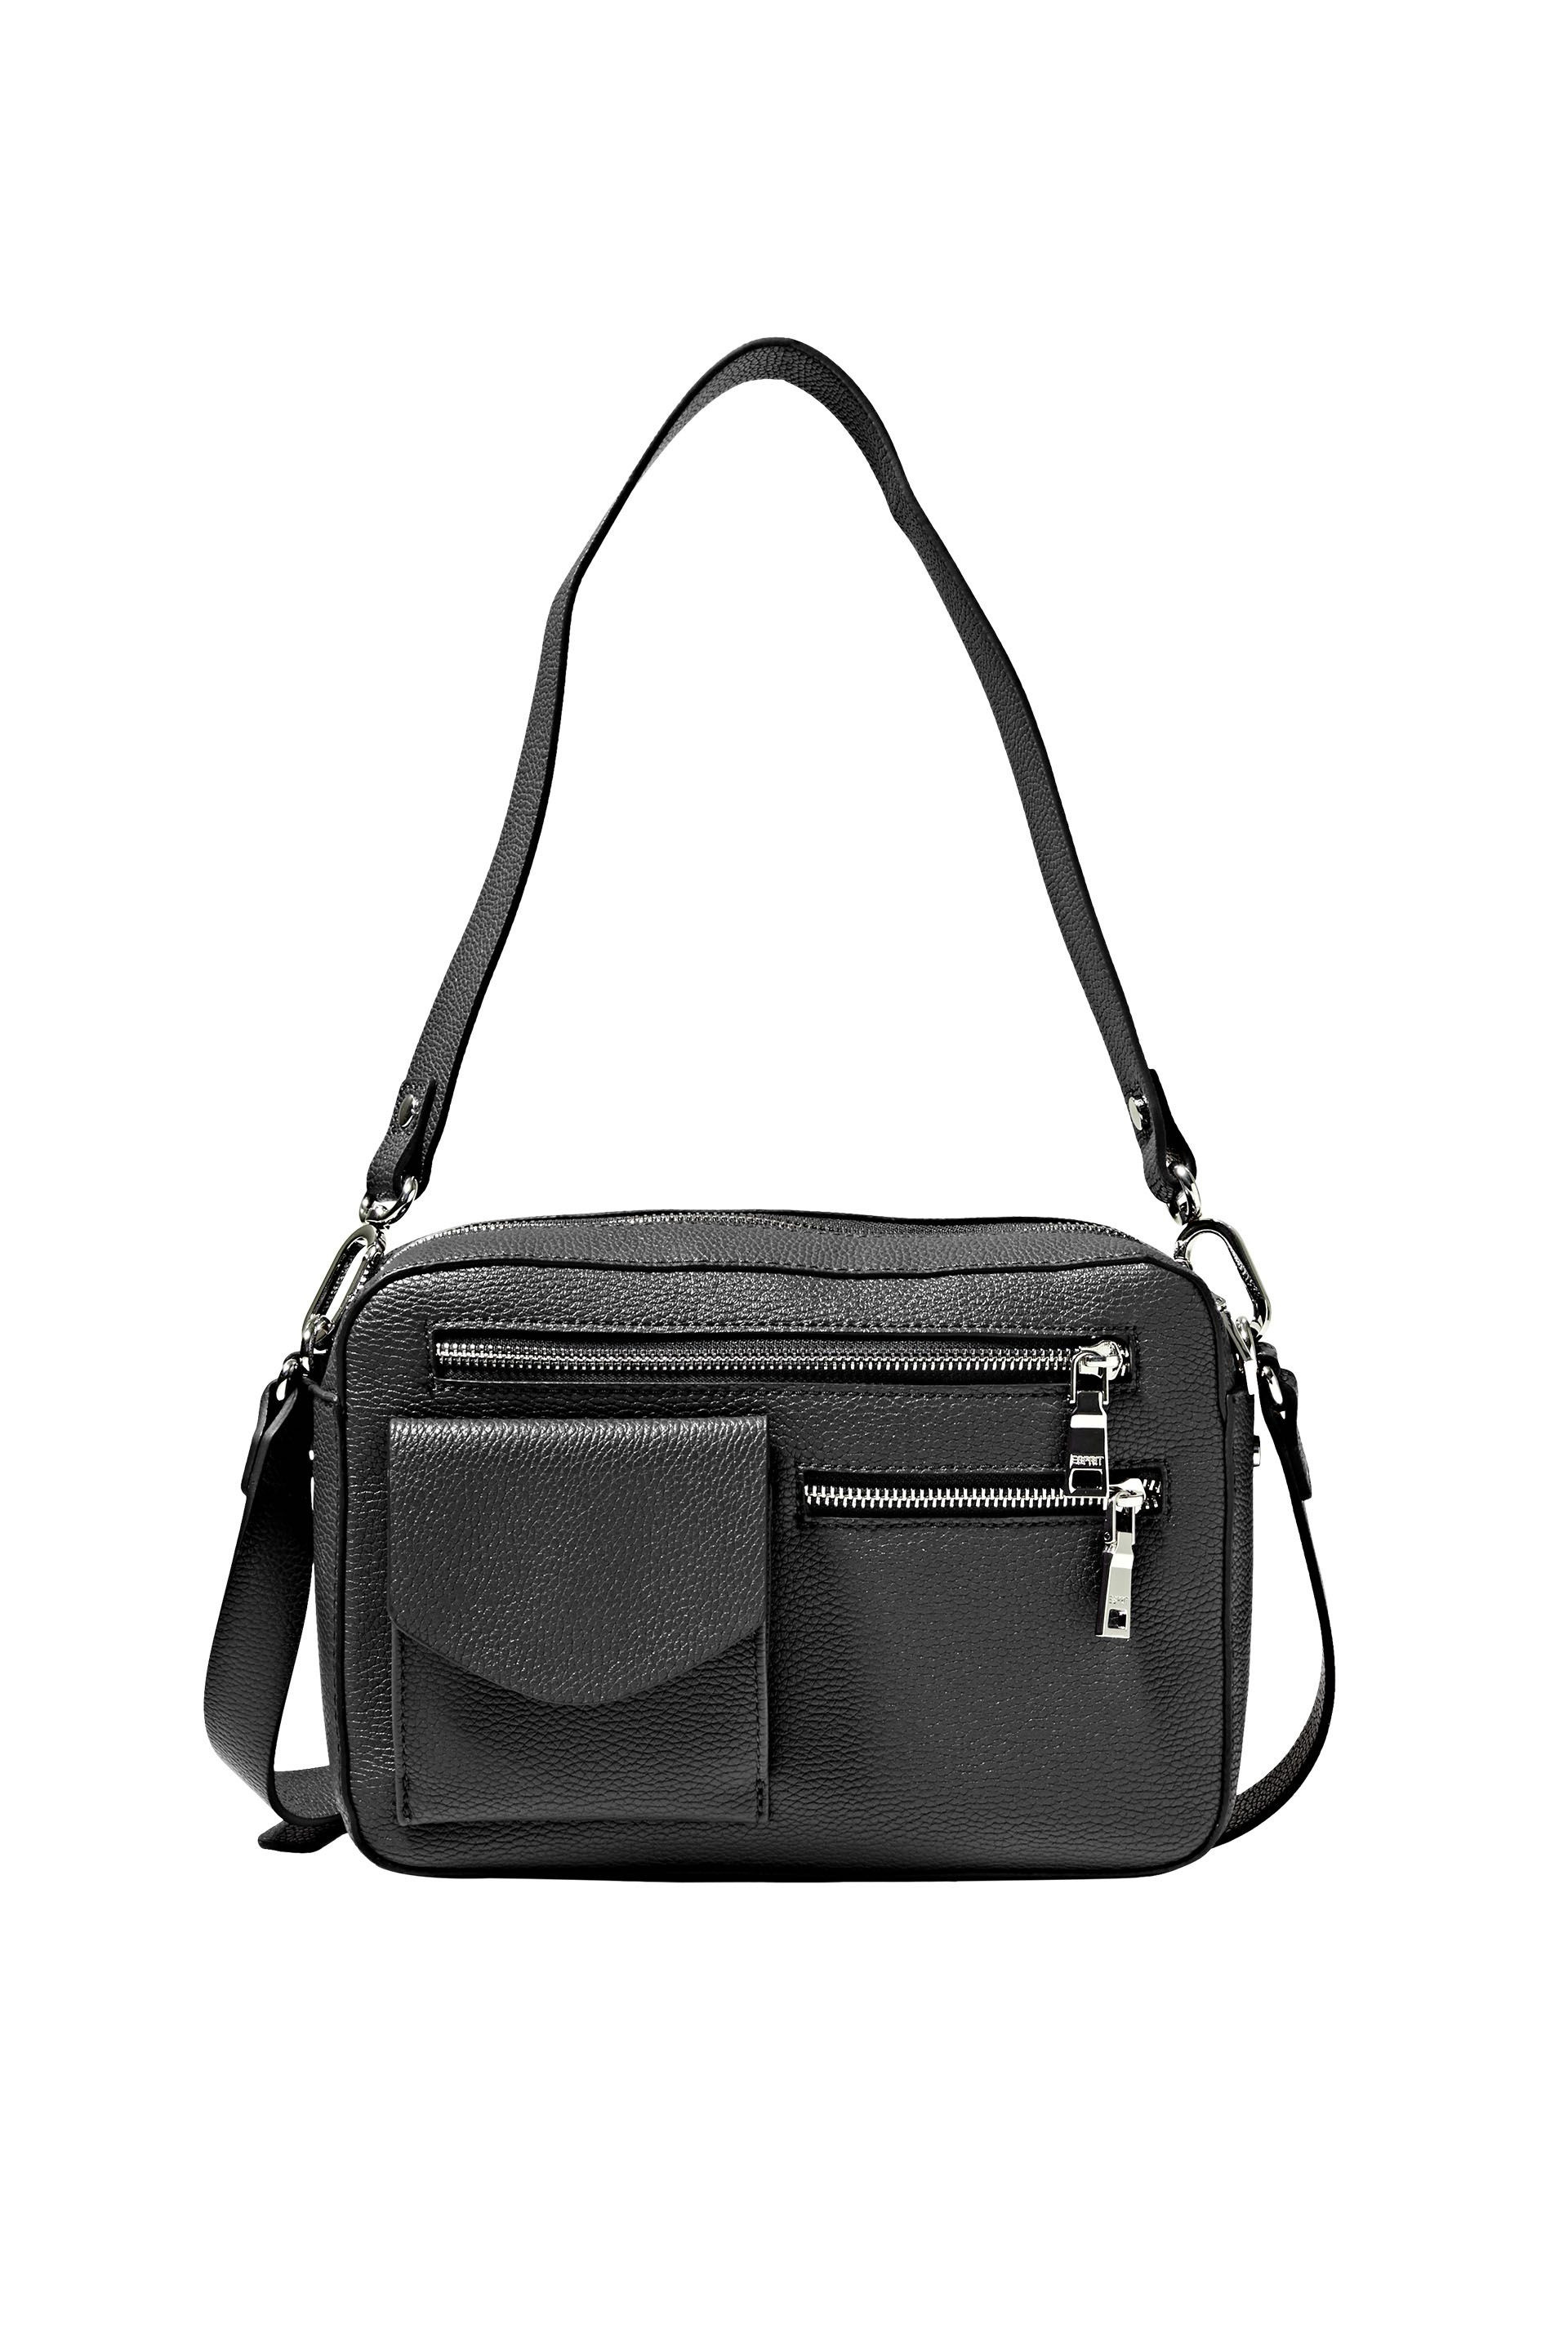 Shoulder bag in faux leather, Black, large image number 0